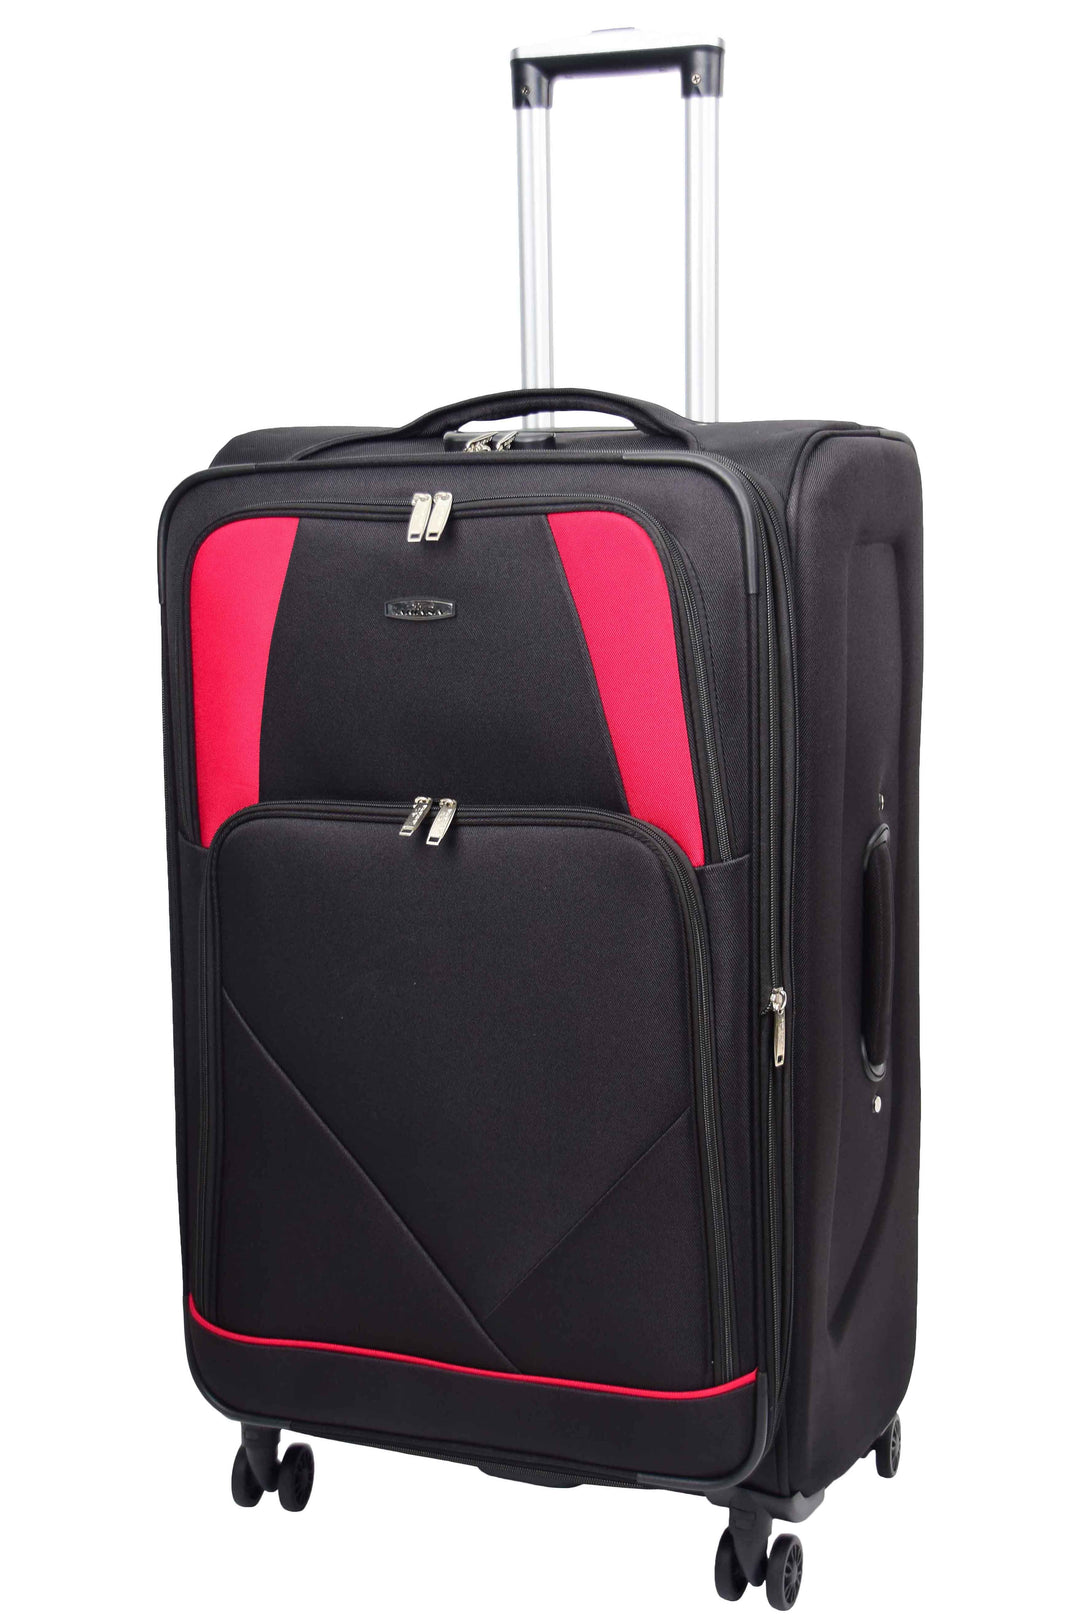 Guardian Lightweight Suitcase 6